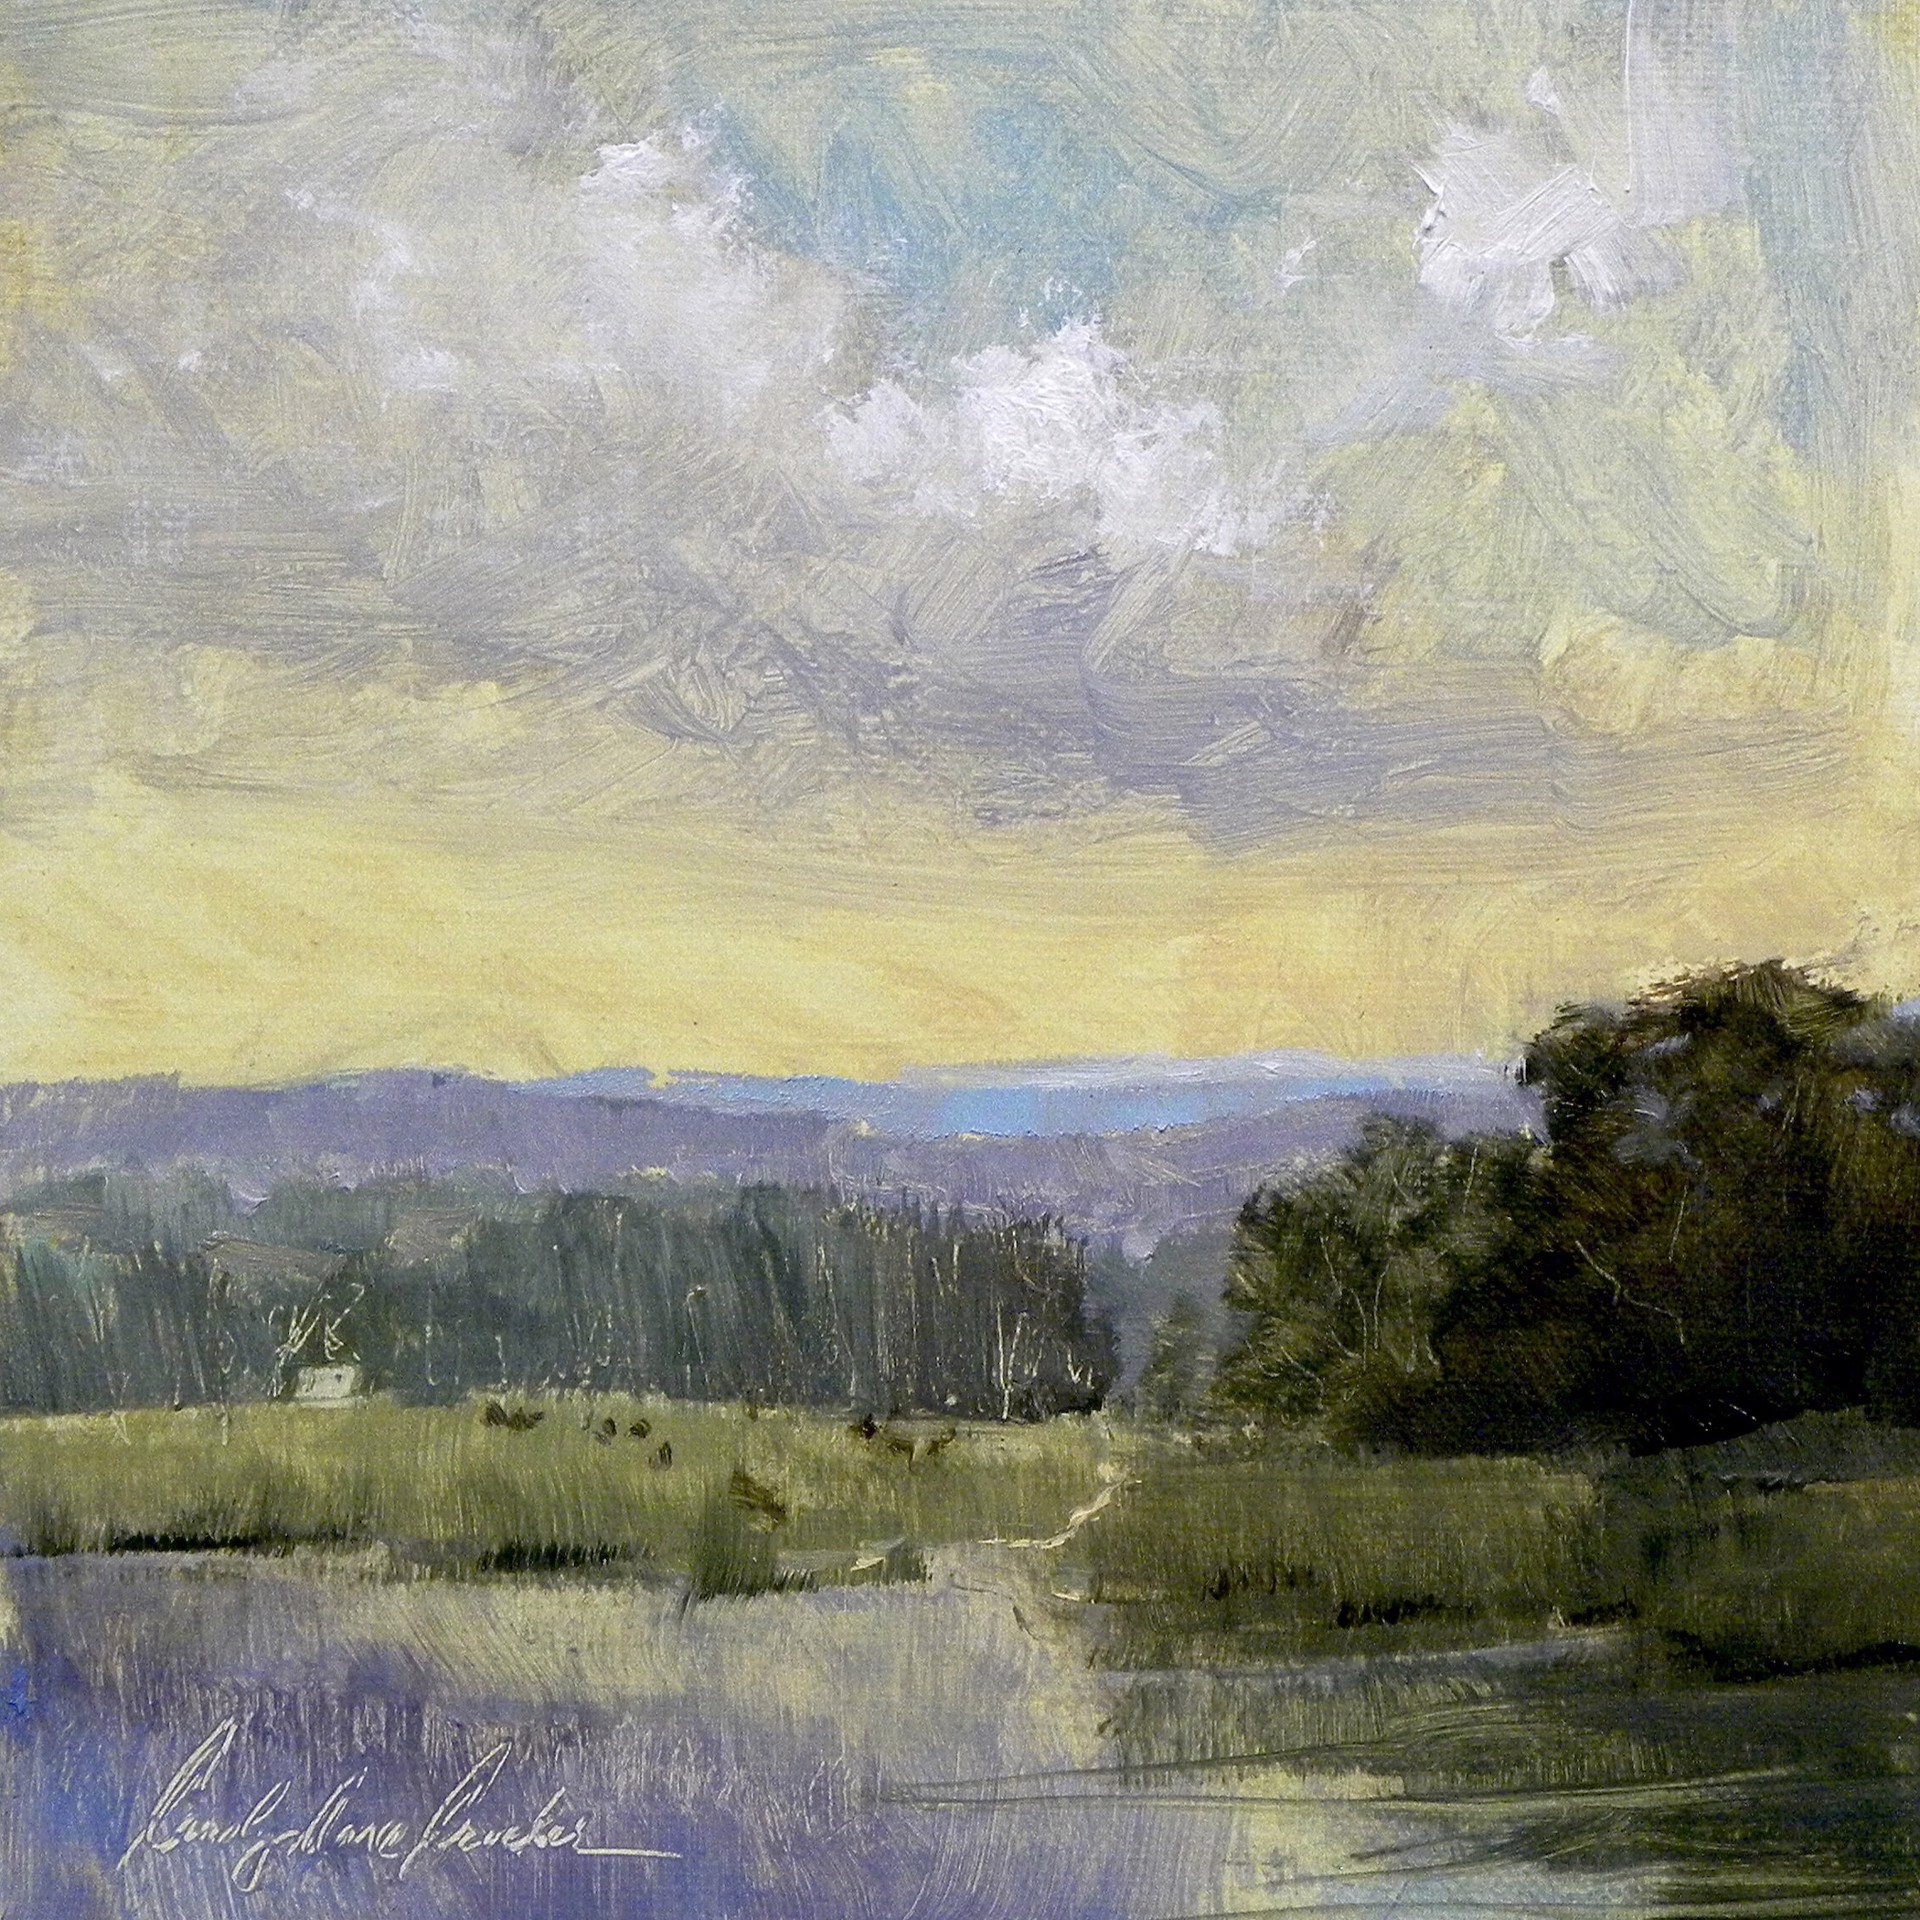 Appalachian Sky by Carolyn Crocker-Rue